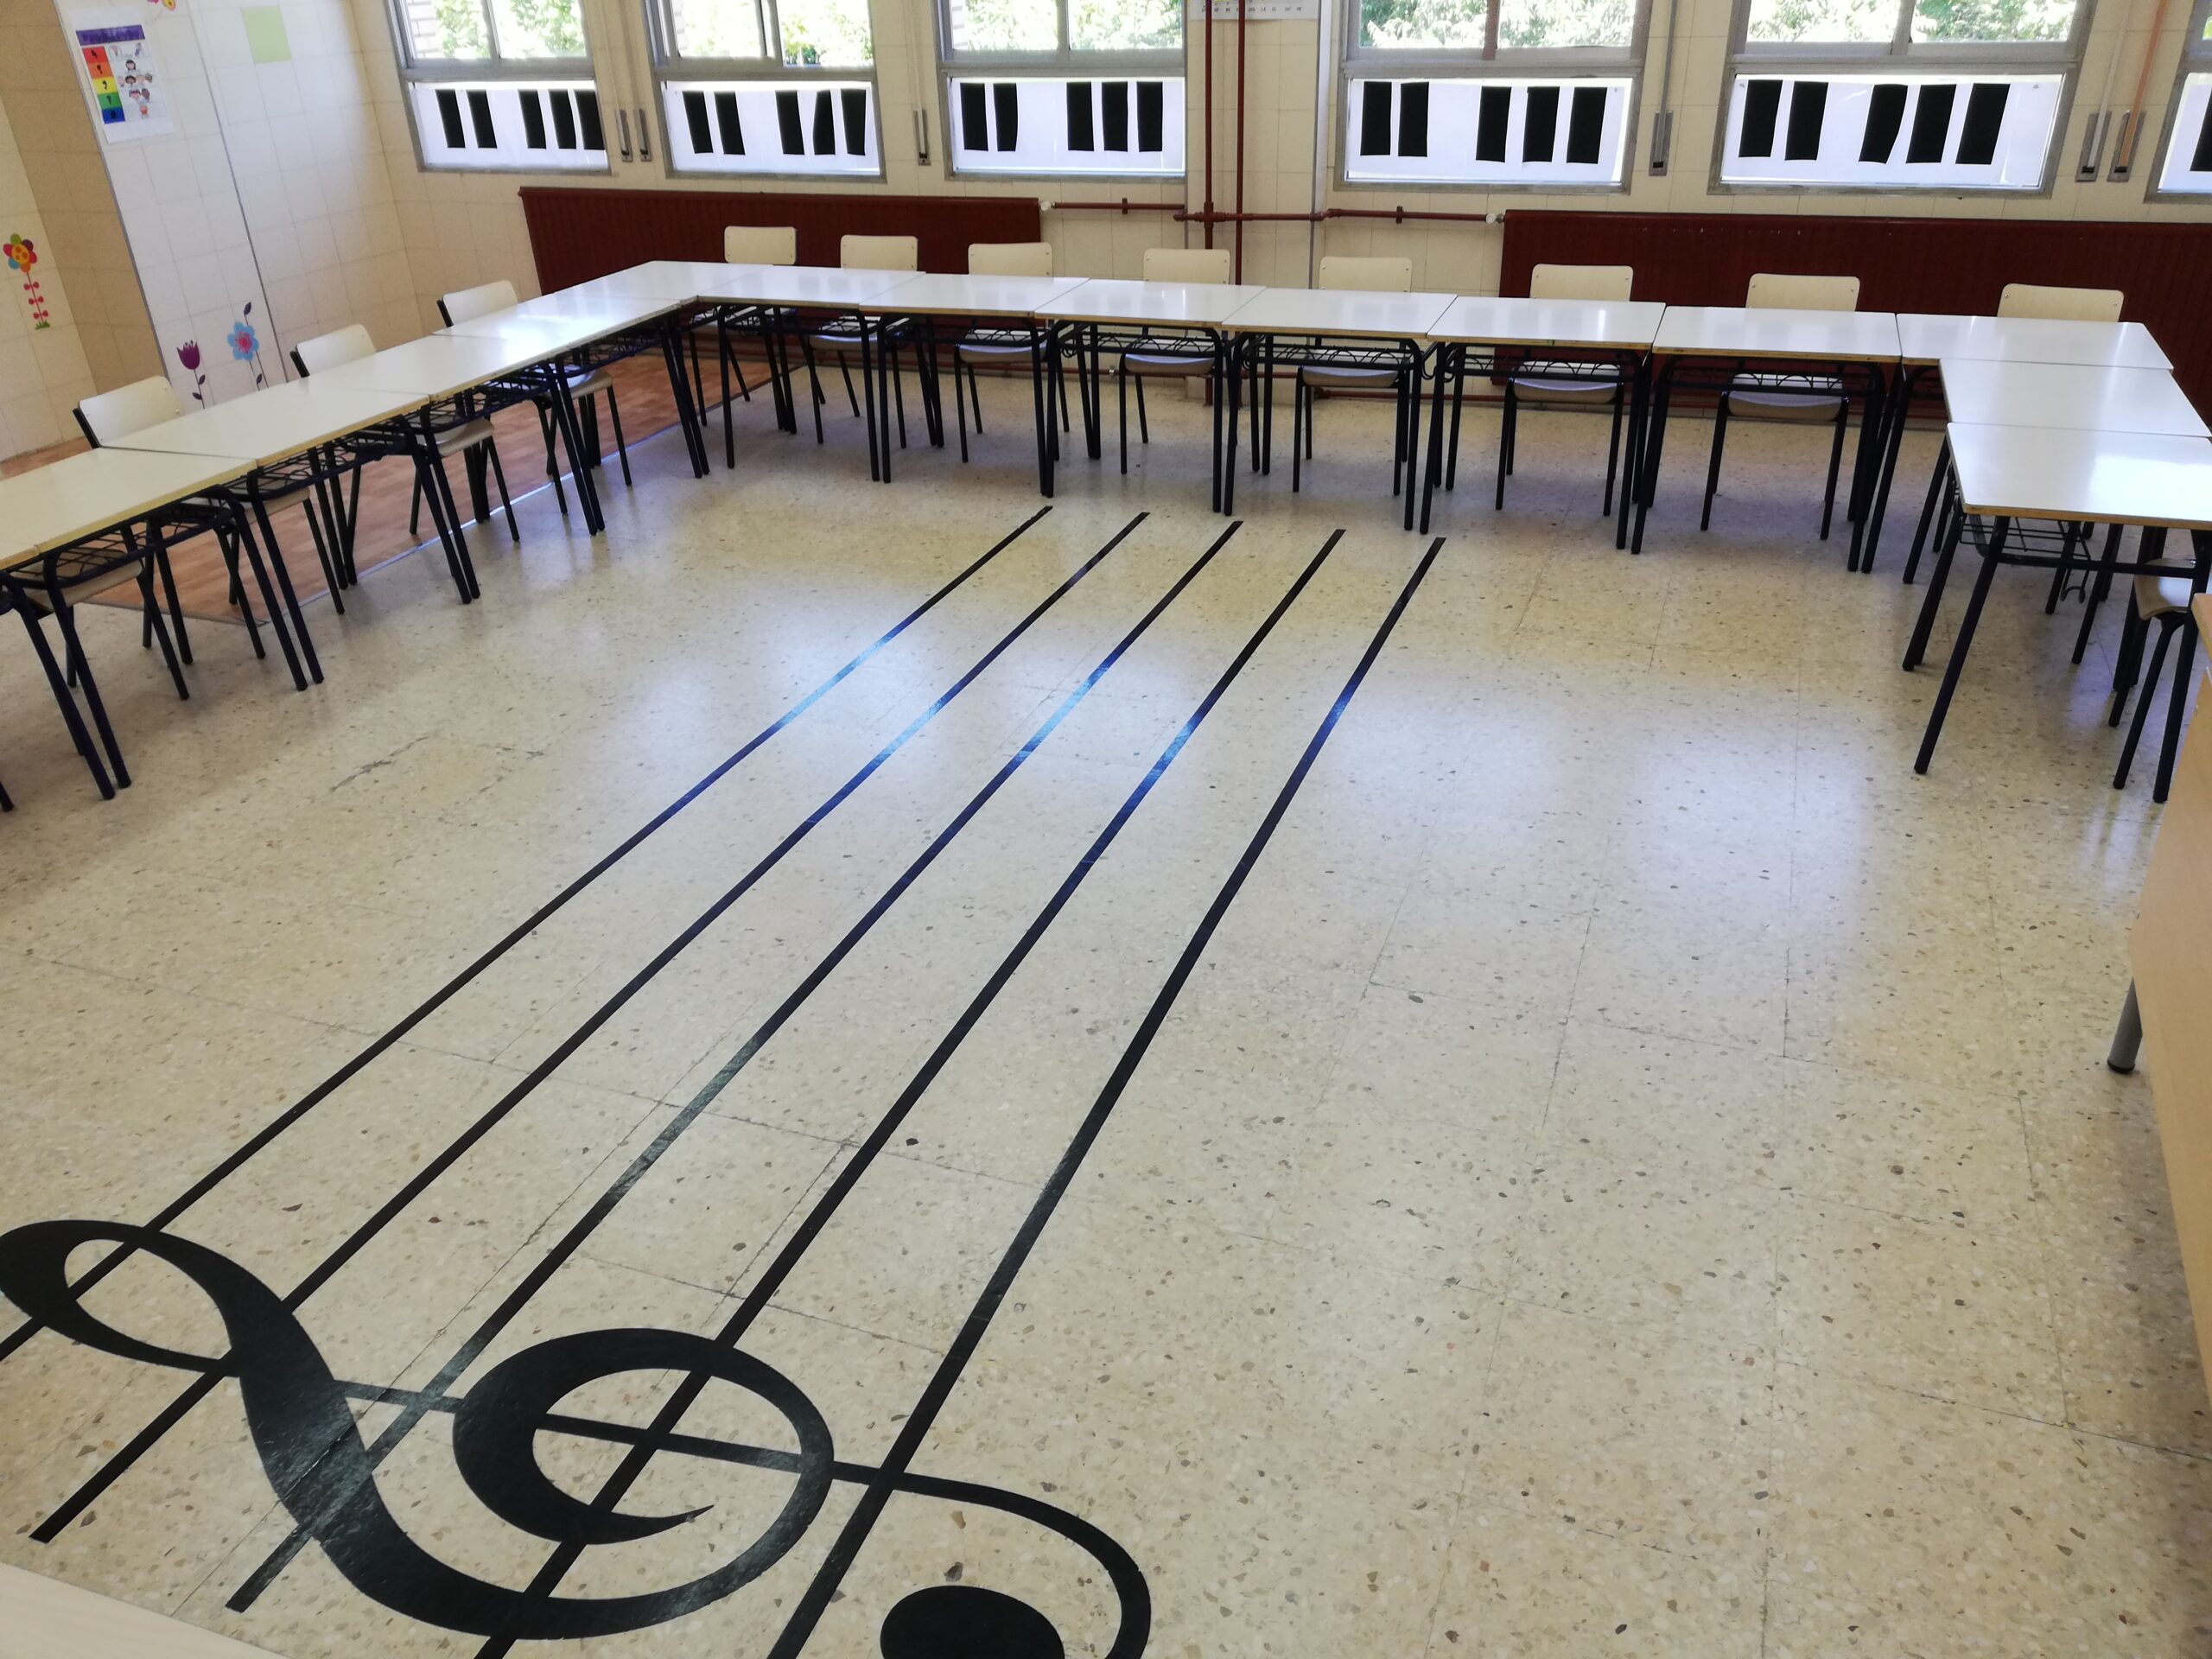 El colegio Ruperto Chapí acogerá parte de las aulas del Conservatorio Municipal de Música el próximo curso